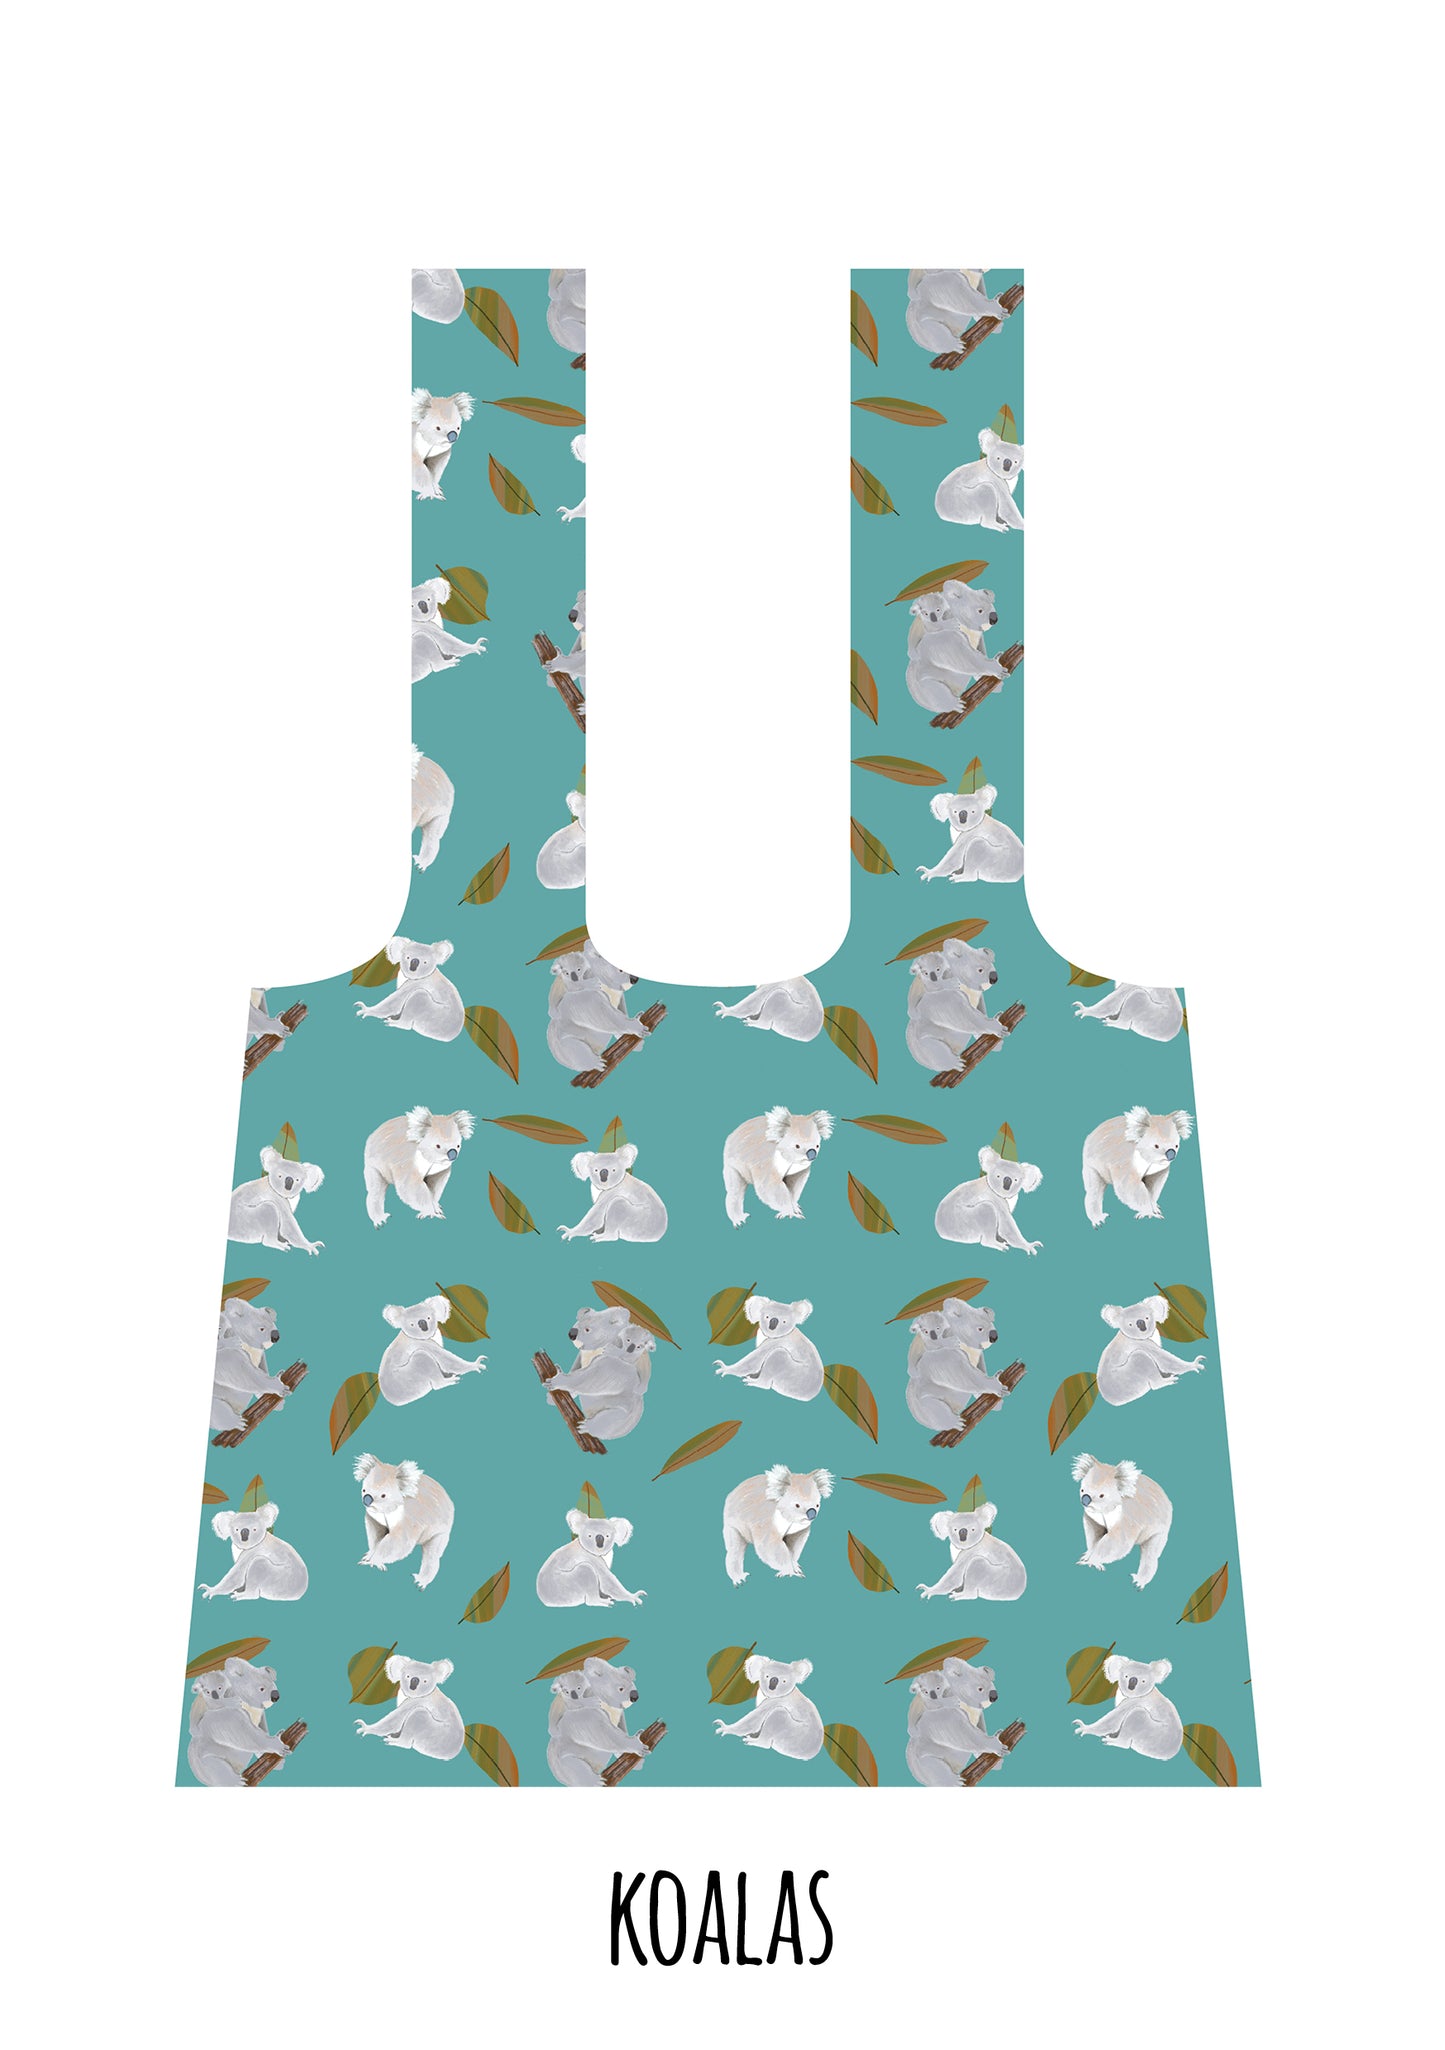 Koala RPET shopping bag